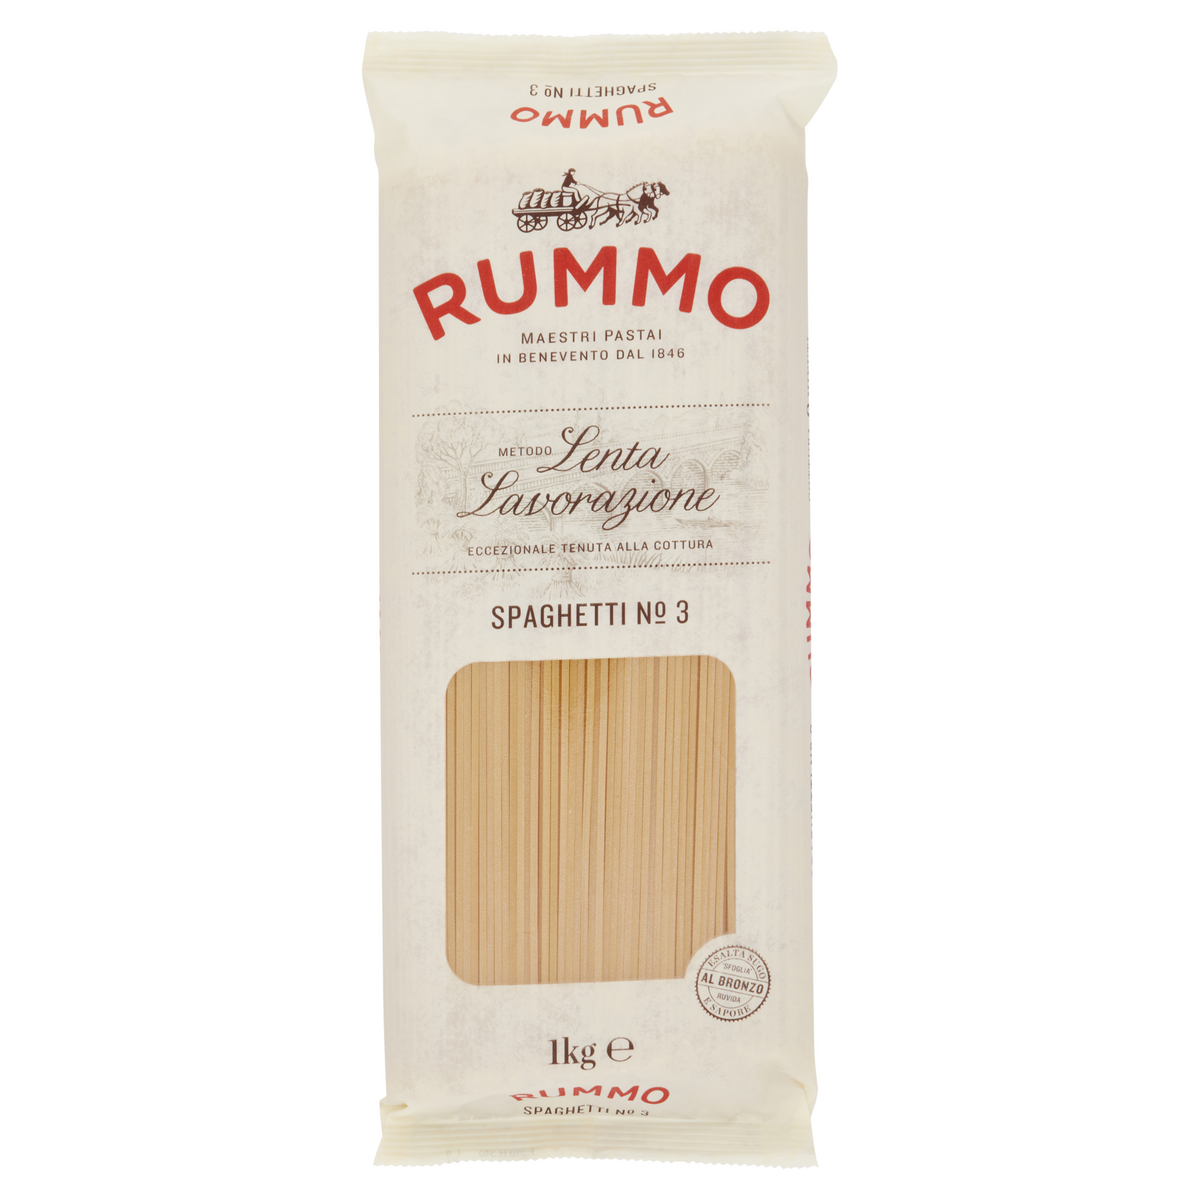 RUMMO Spaghetti n°3 1kg